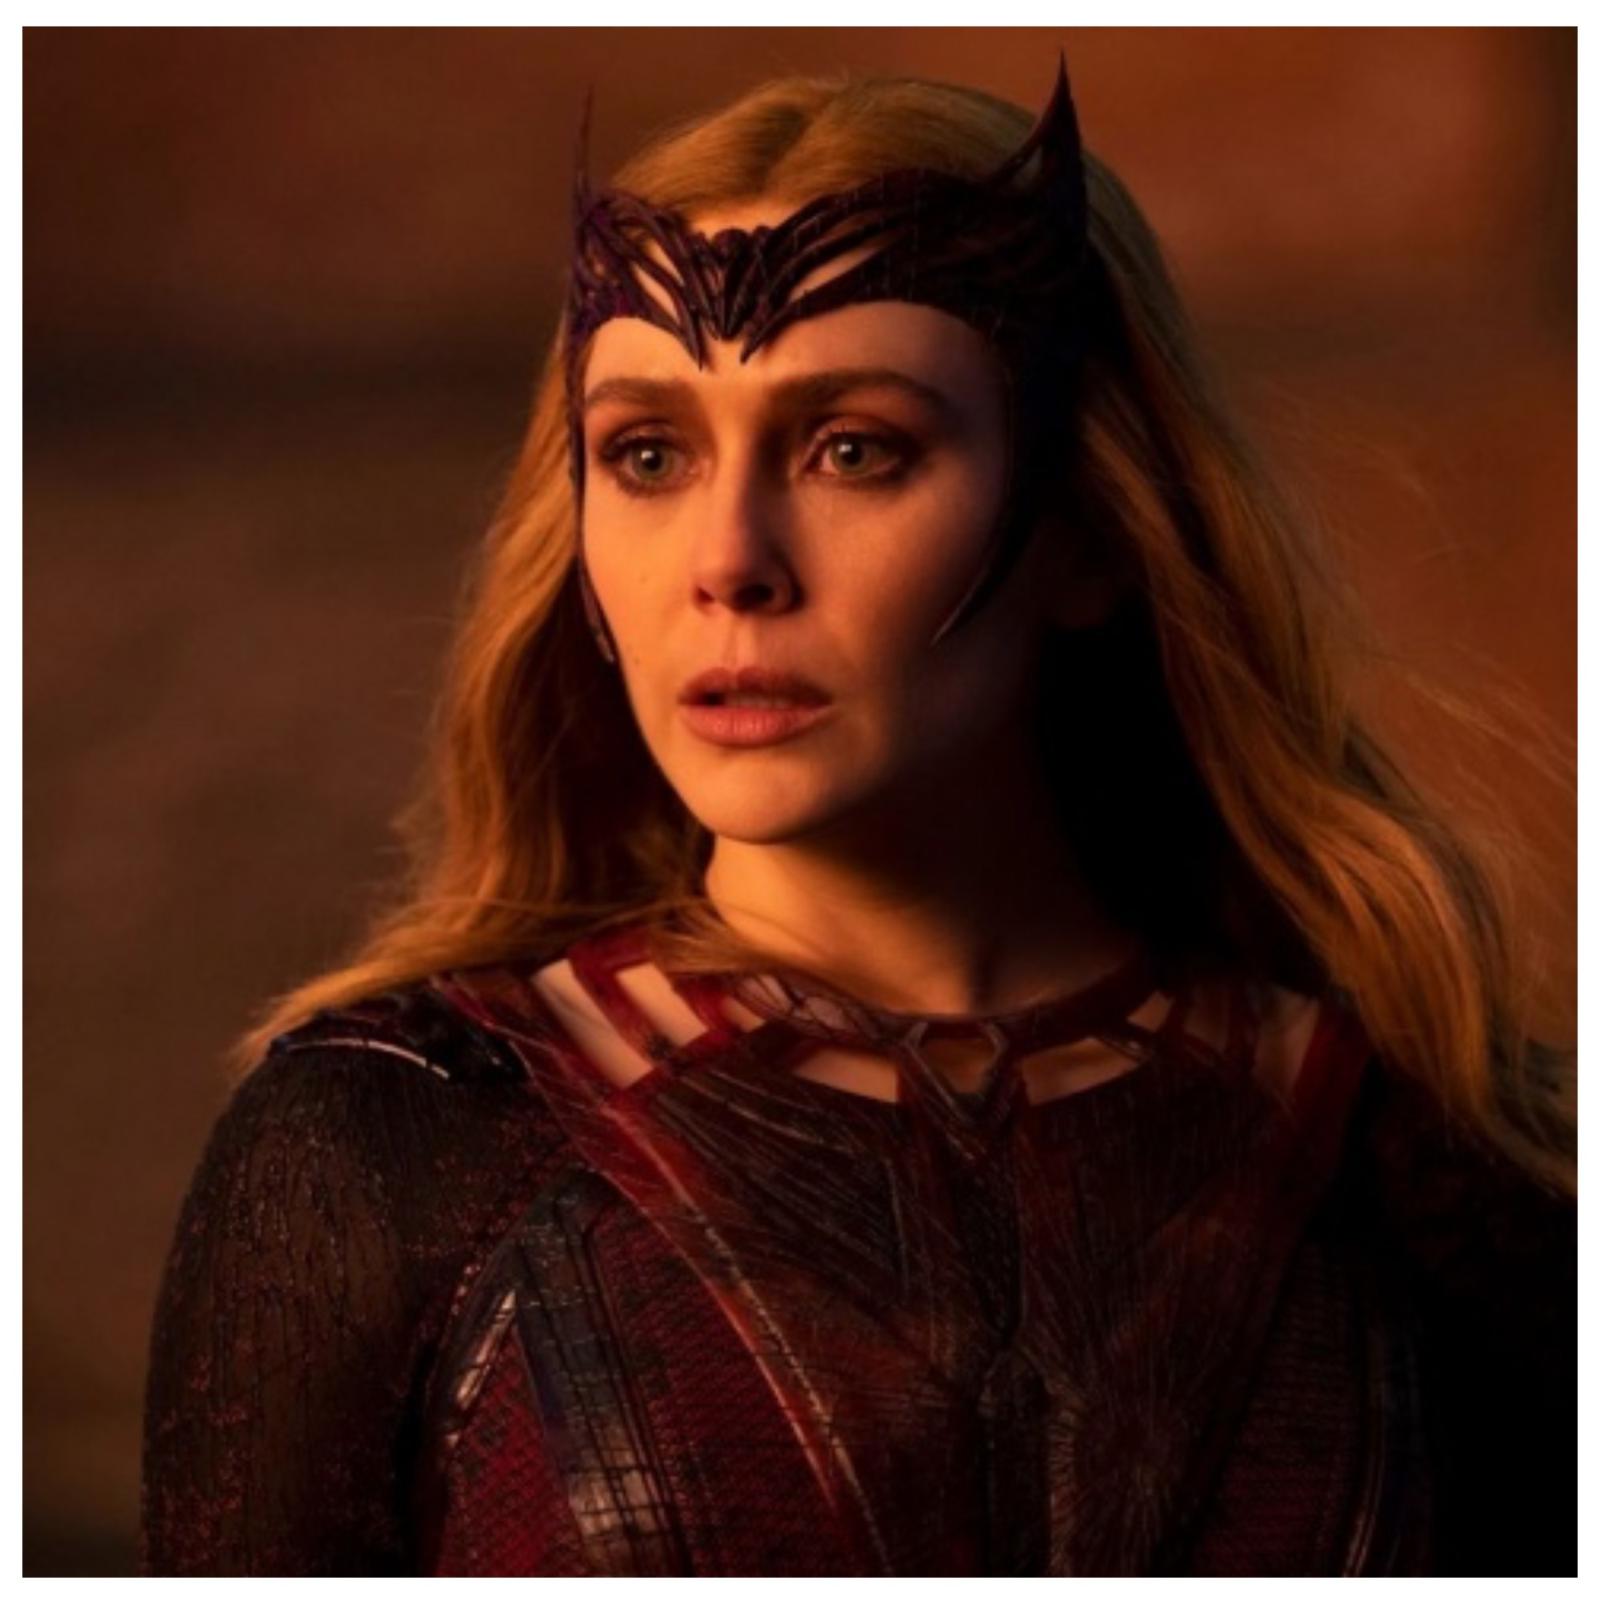 Звезда Marvel Элизабет Олсен назвала фильмы о супергероях «нелепыми» и «смешными»